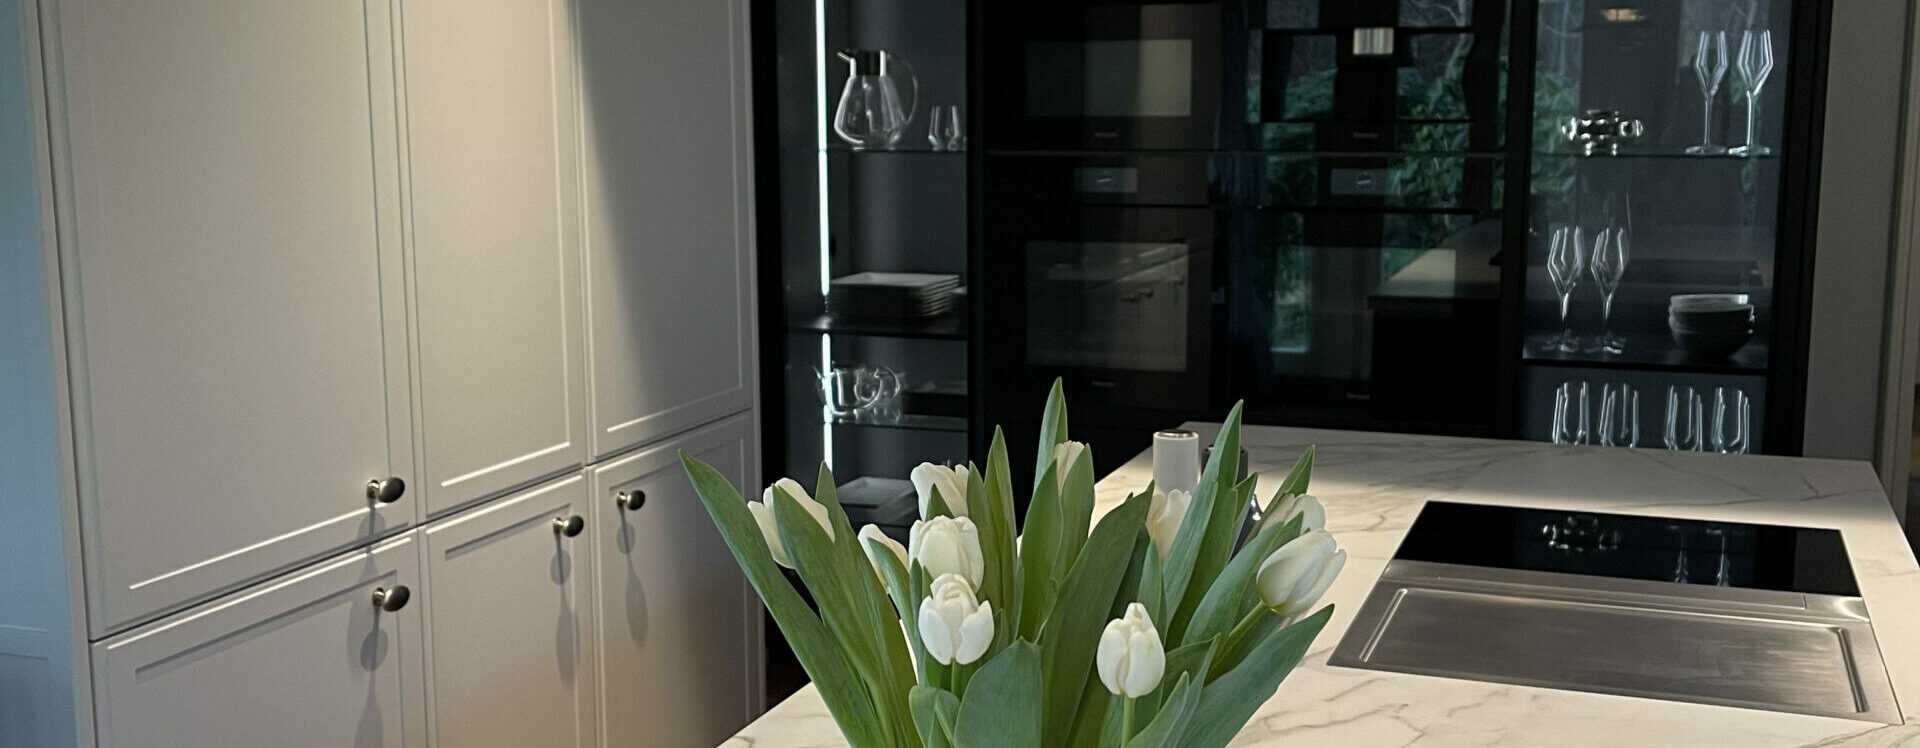 Das Bild zeigt Designerlampen in einer neuen Küche.